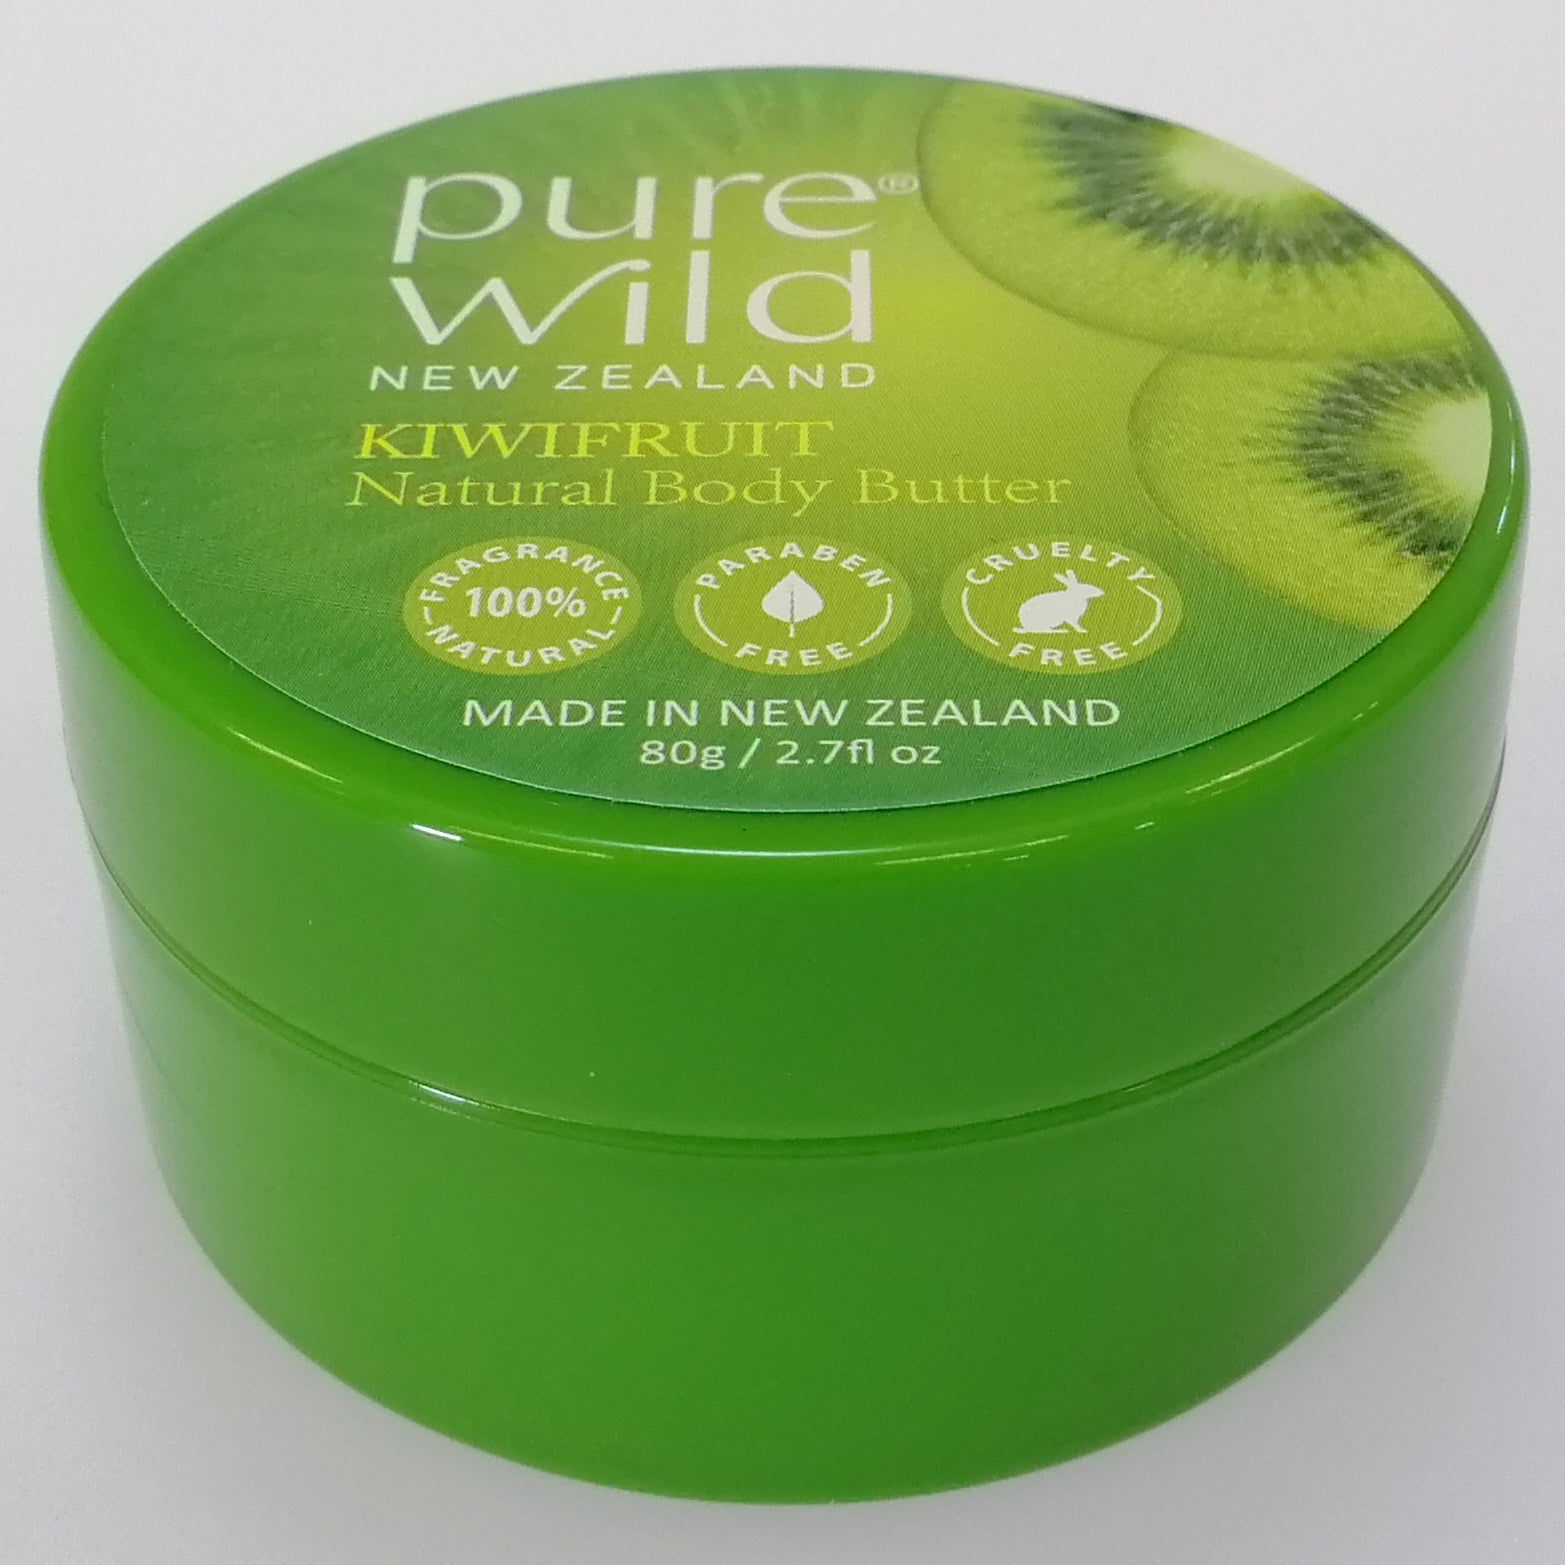 Purewild Natural Body Butter Moisturiser - Kiwifruit